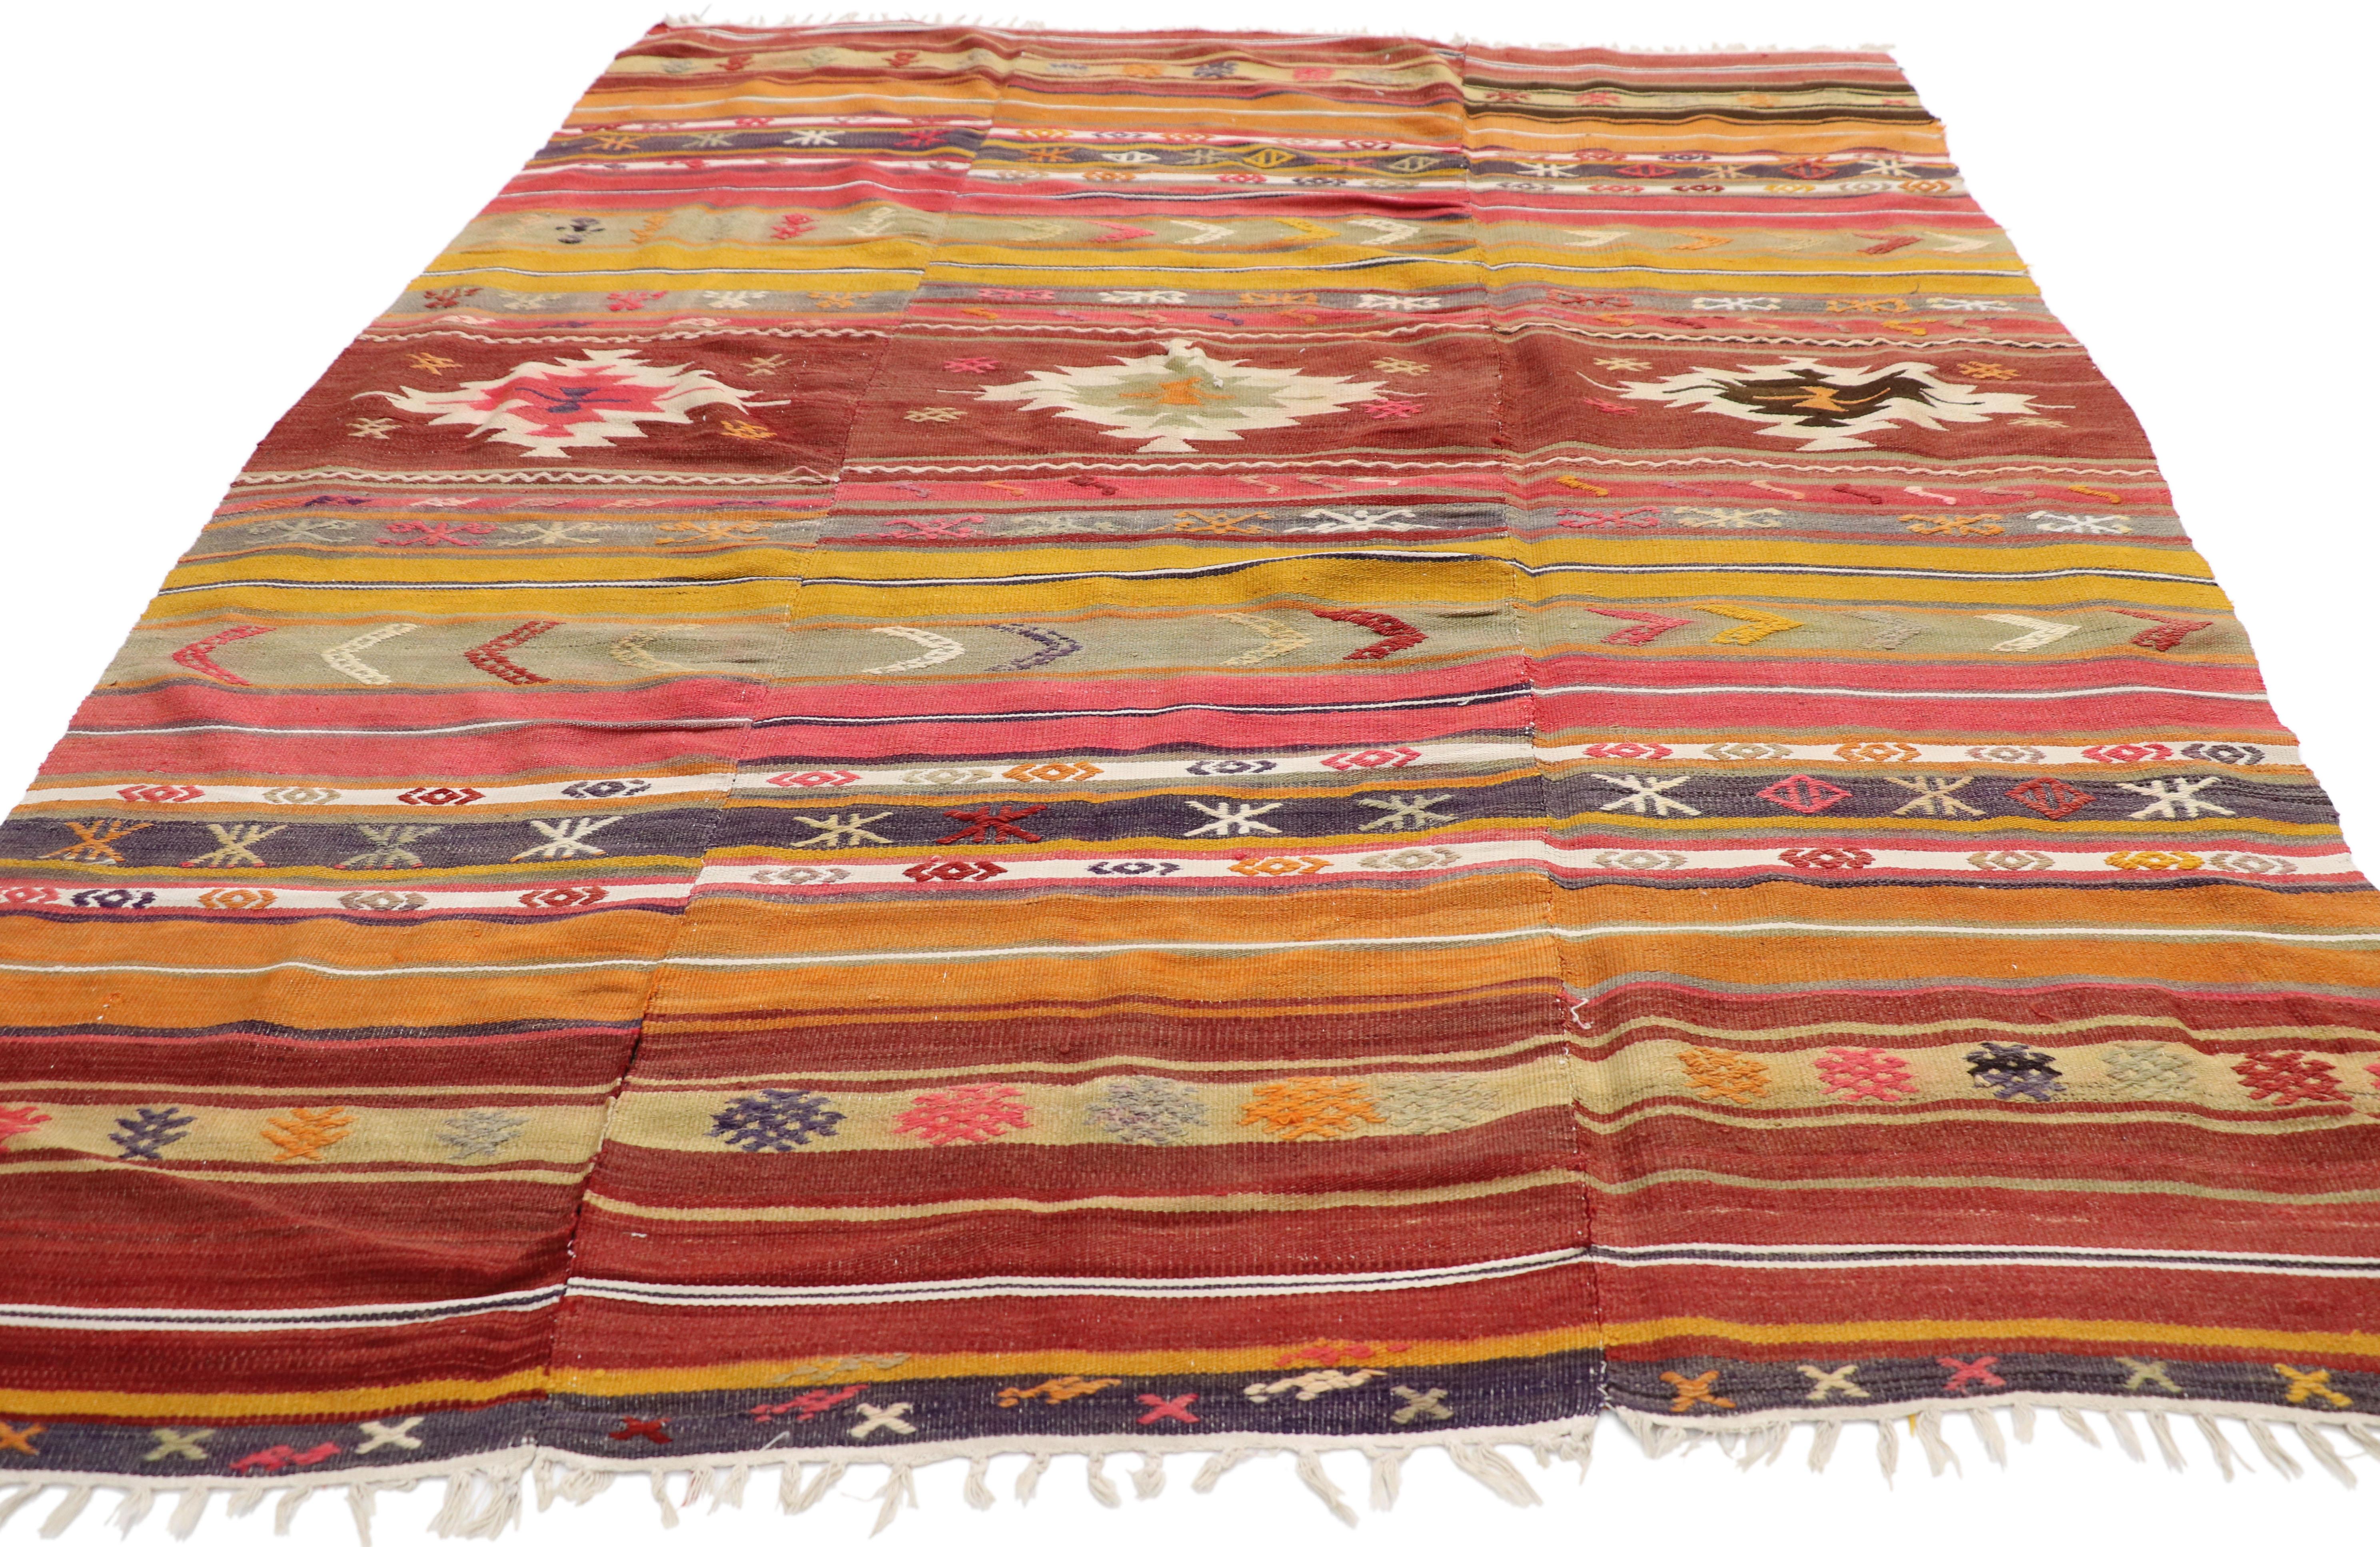 Navajo Vintage Turkish Kilim Flat-Weave Rug with Boho Chic Southwestern Style